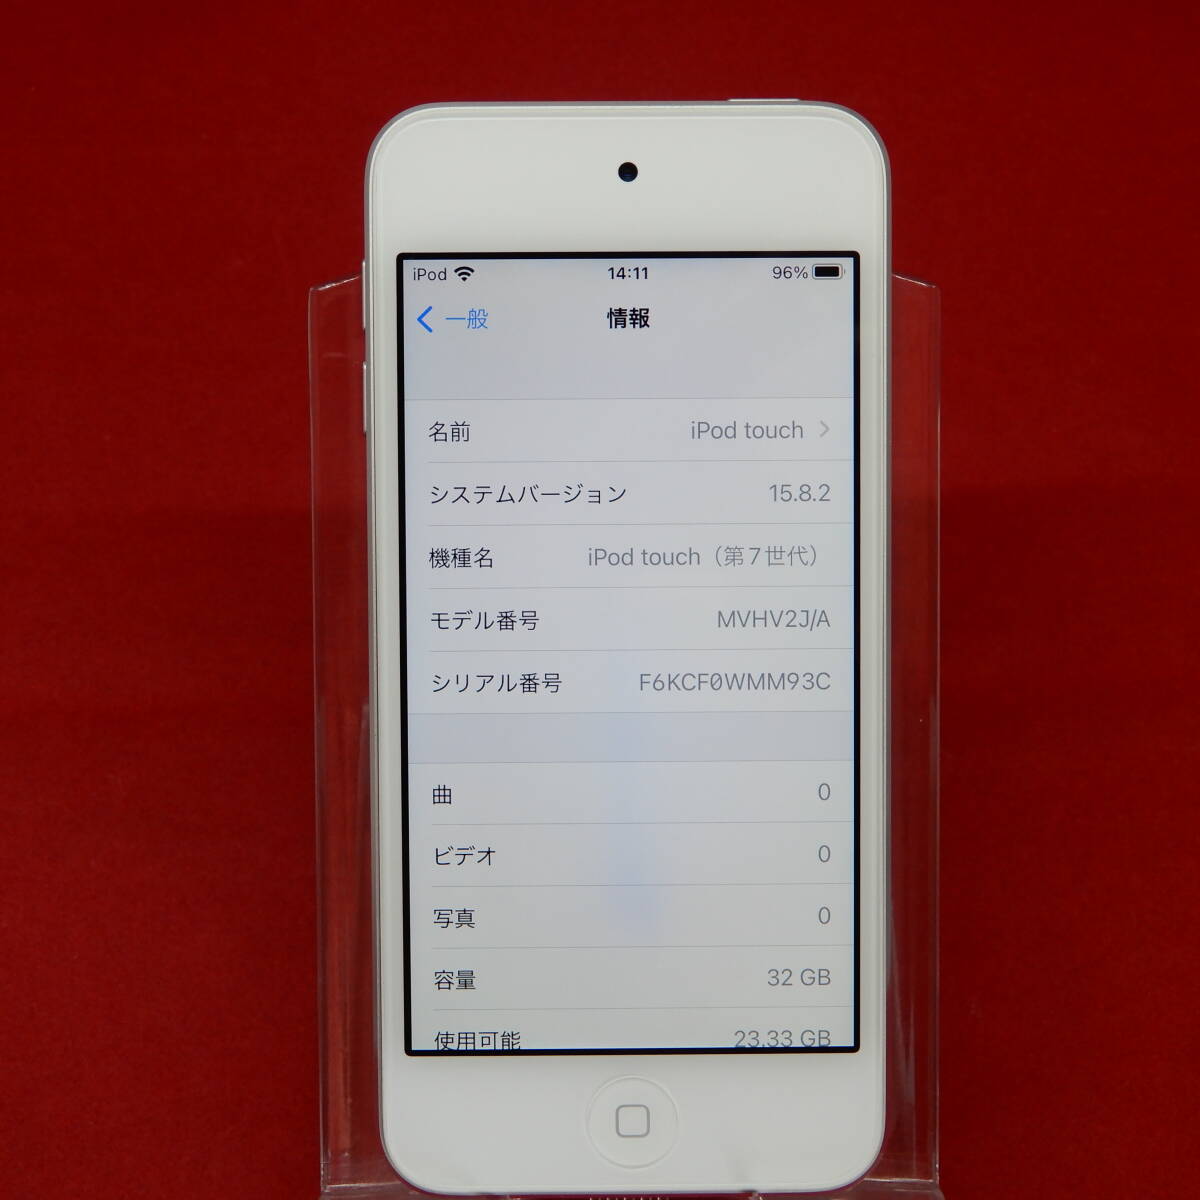 APPLE MVHV2J/A iPod touch no. 7 поколение 32GB серебряный утиль NO.240426060